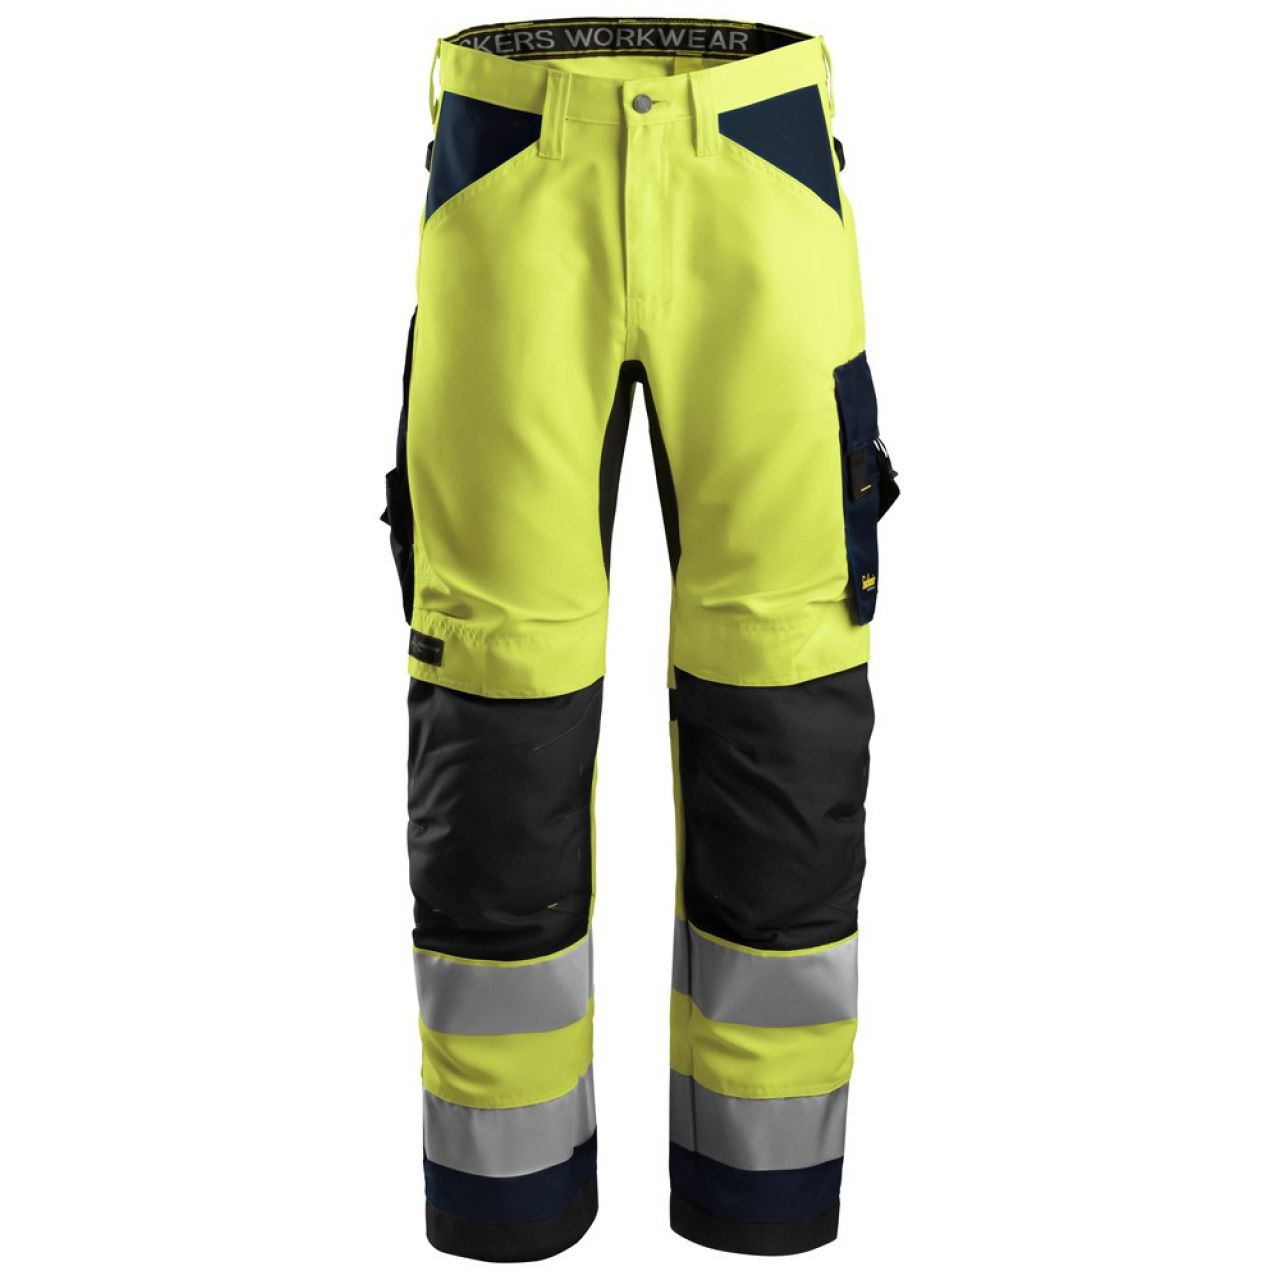 6331 Pantalones largos de trabajo de alta visibilidad clase 2 AllroundWork amarillo-azul marino talla 254